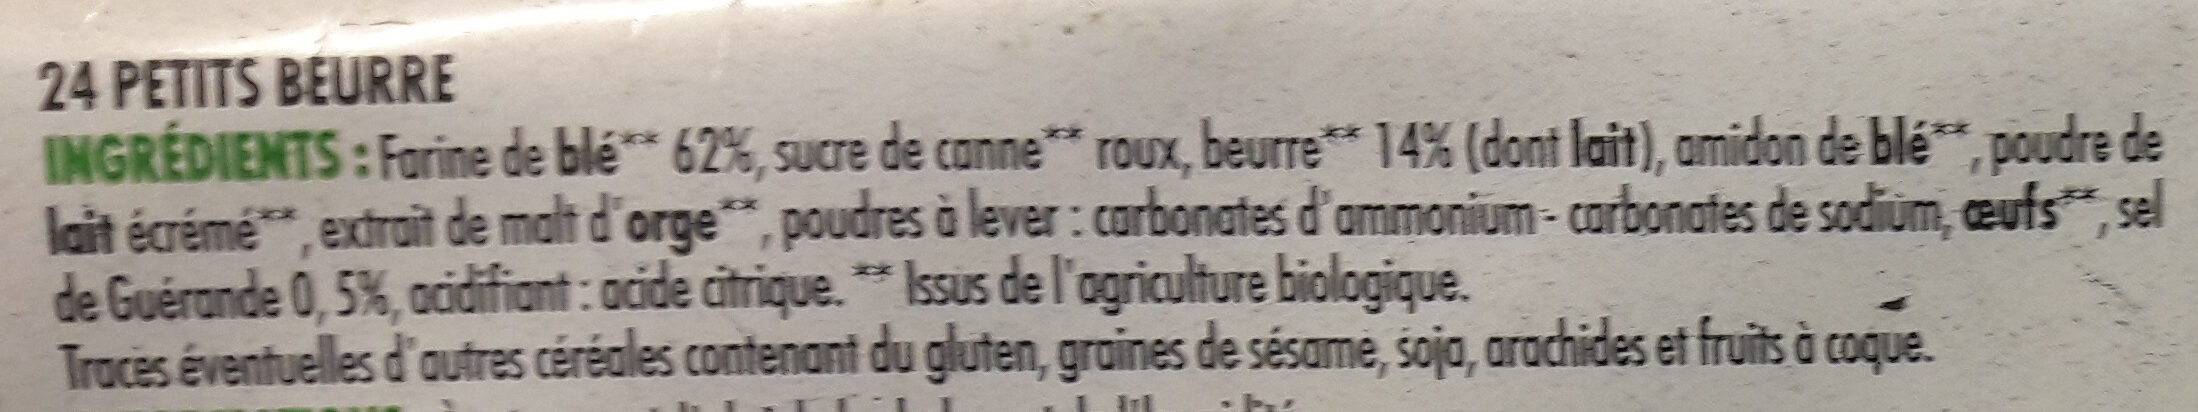 Petit beurre - 200g BIO - Ingrediënten - fr